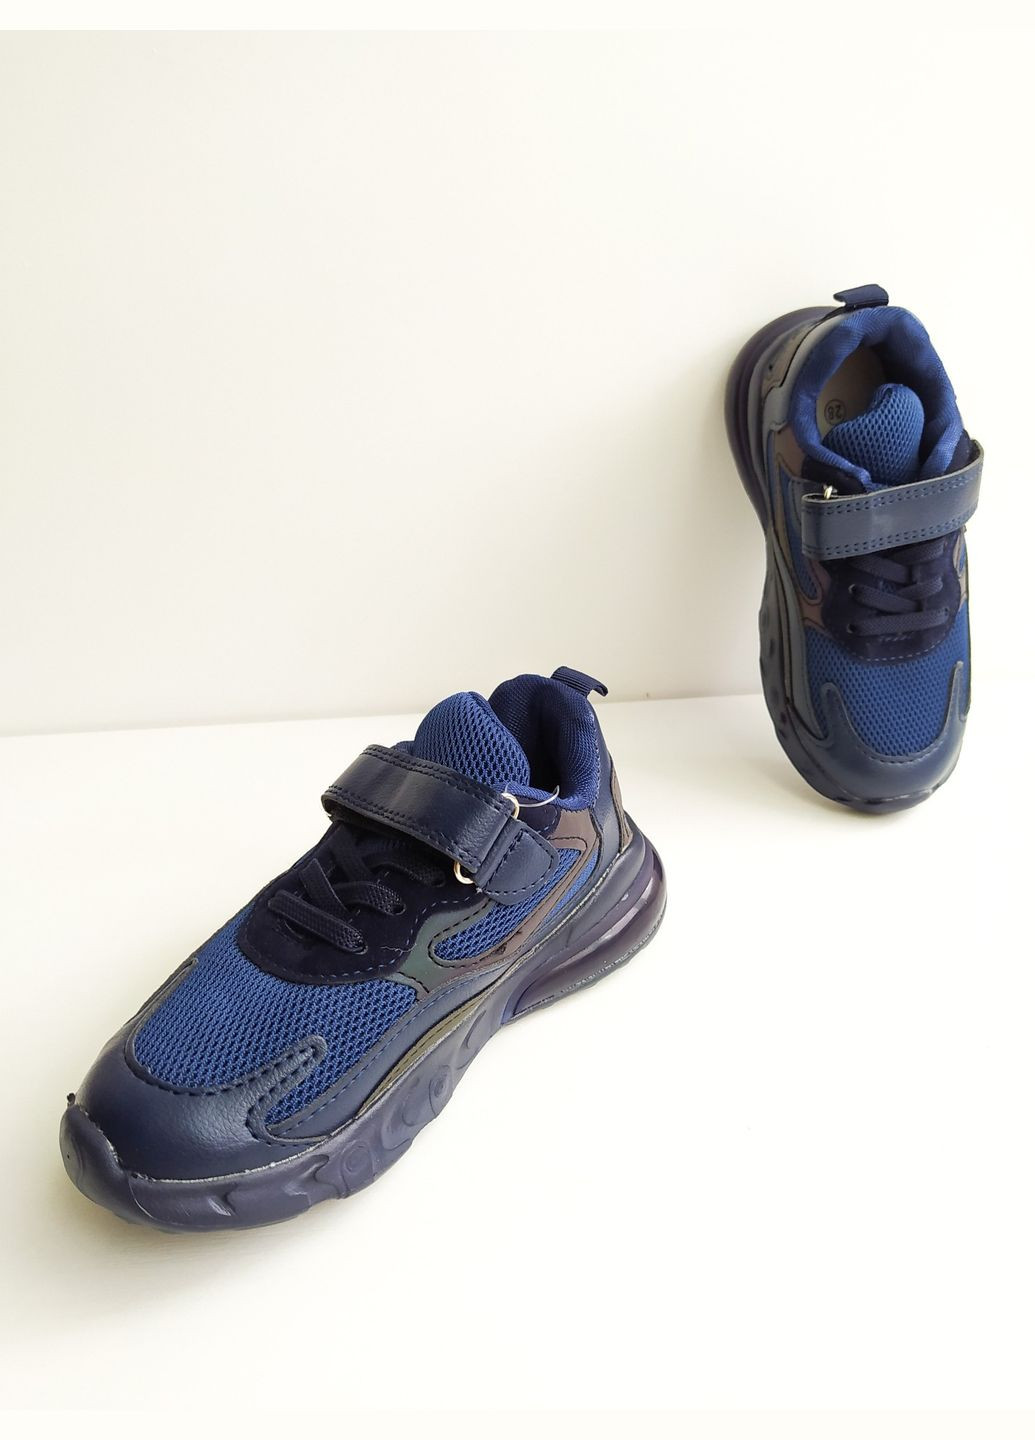 Синие детские кроссовки 27 г 17 см синий артикул к147 Jong Golf